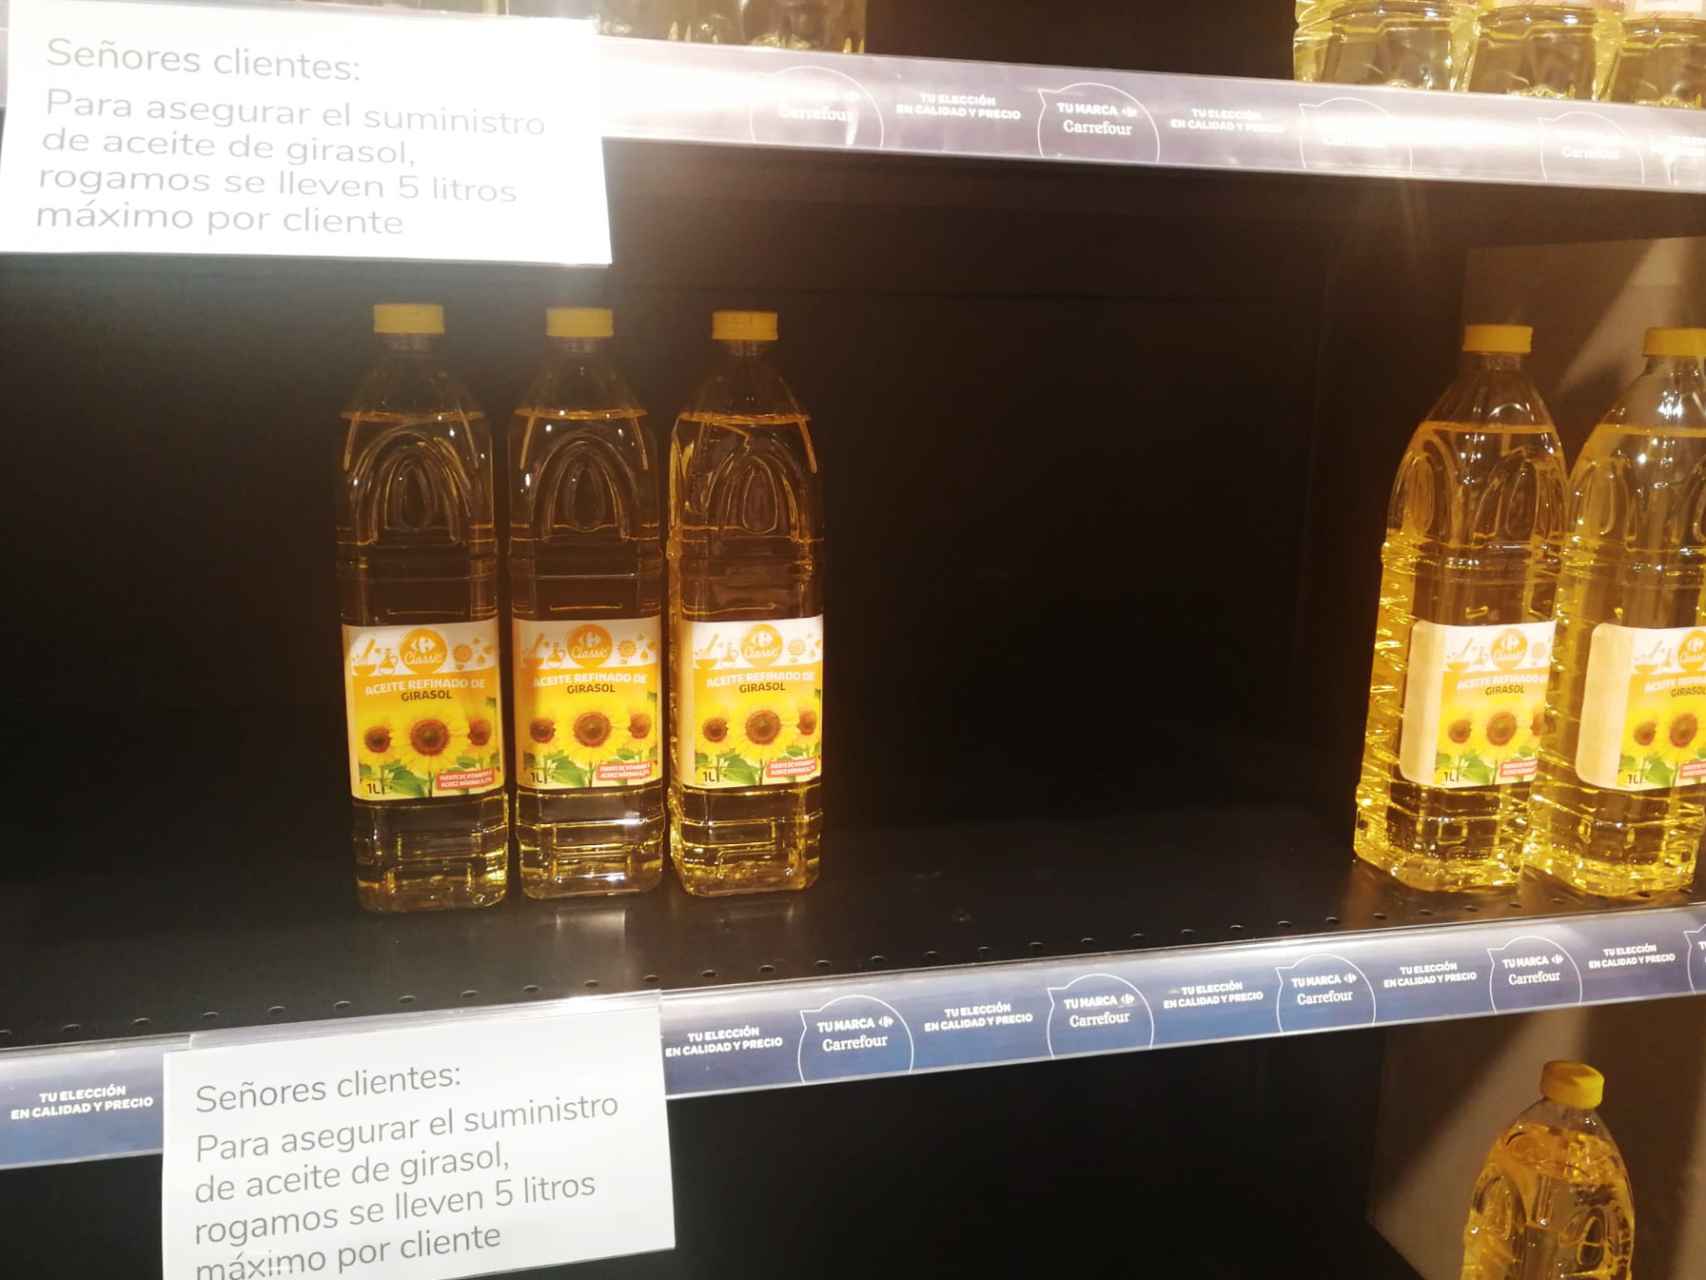 Encontrar aceite de girasol en los supermercados vallisoletanos: misión casi imposible por la guerra de Ucrania